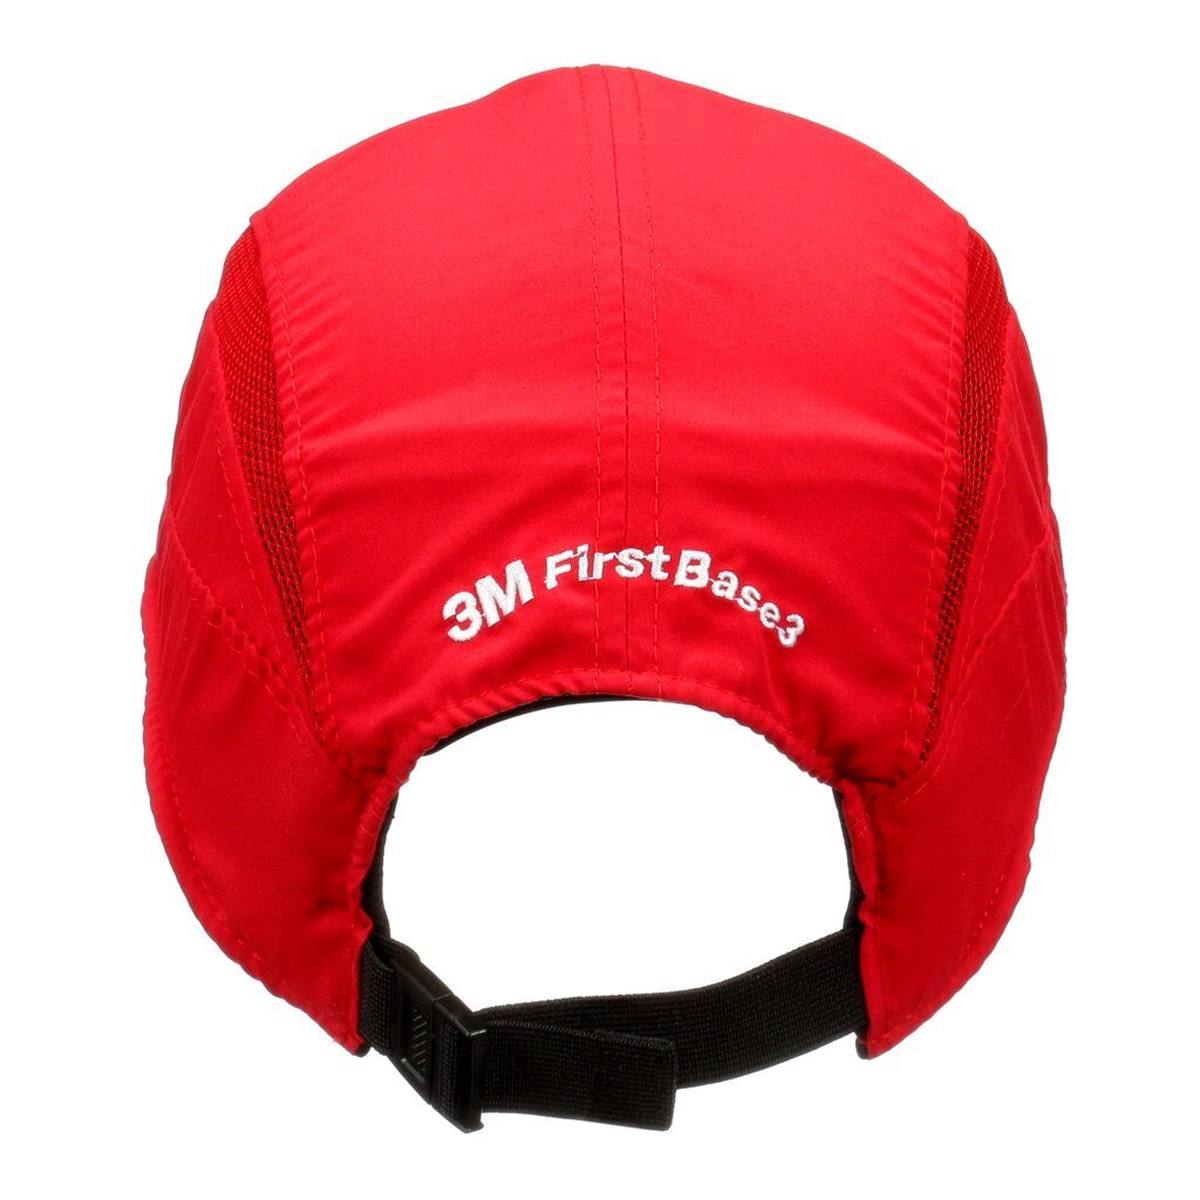 3M Scott First Base 3 Classic - bump cap in red - standard peak 70 mm, EN812